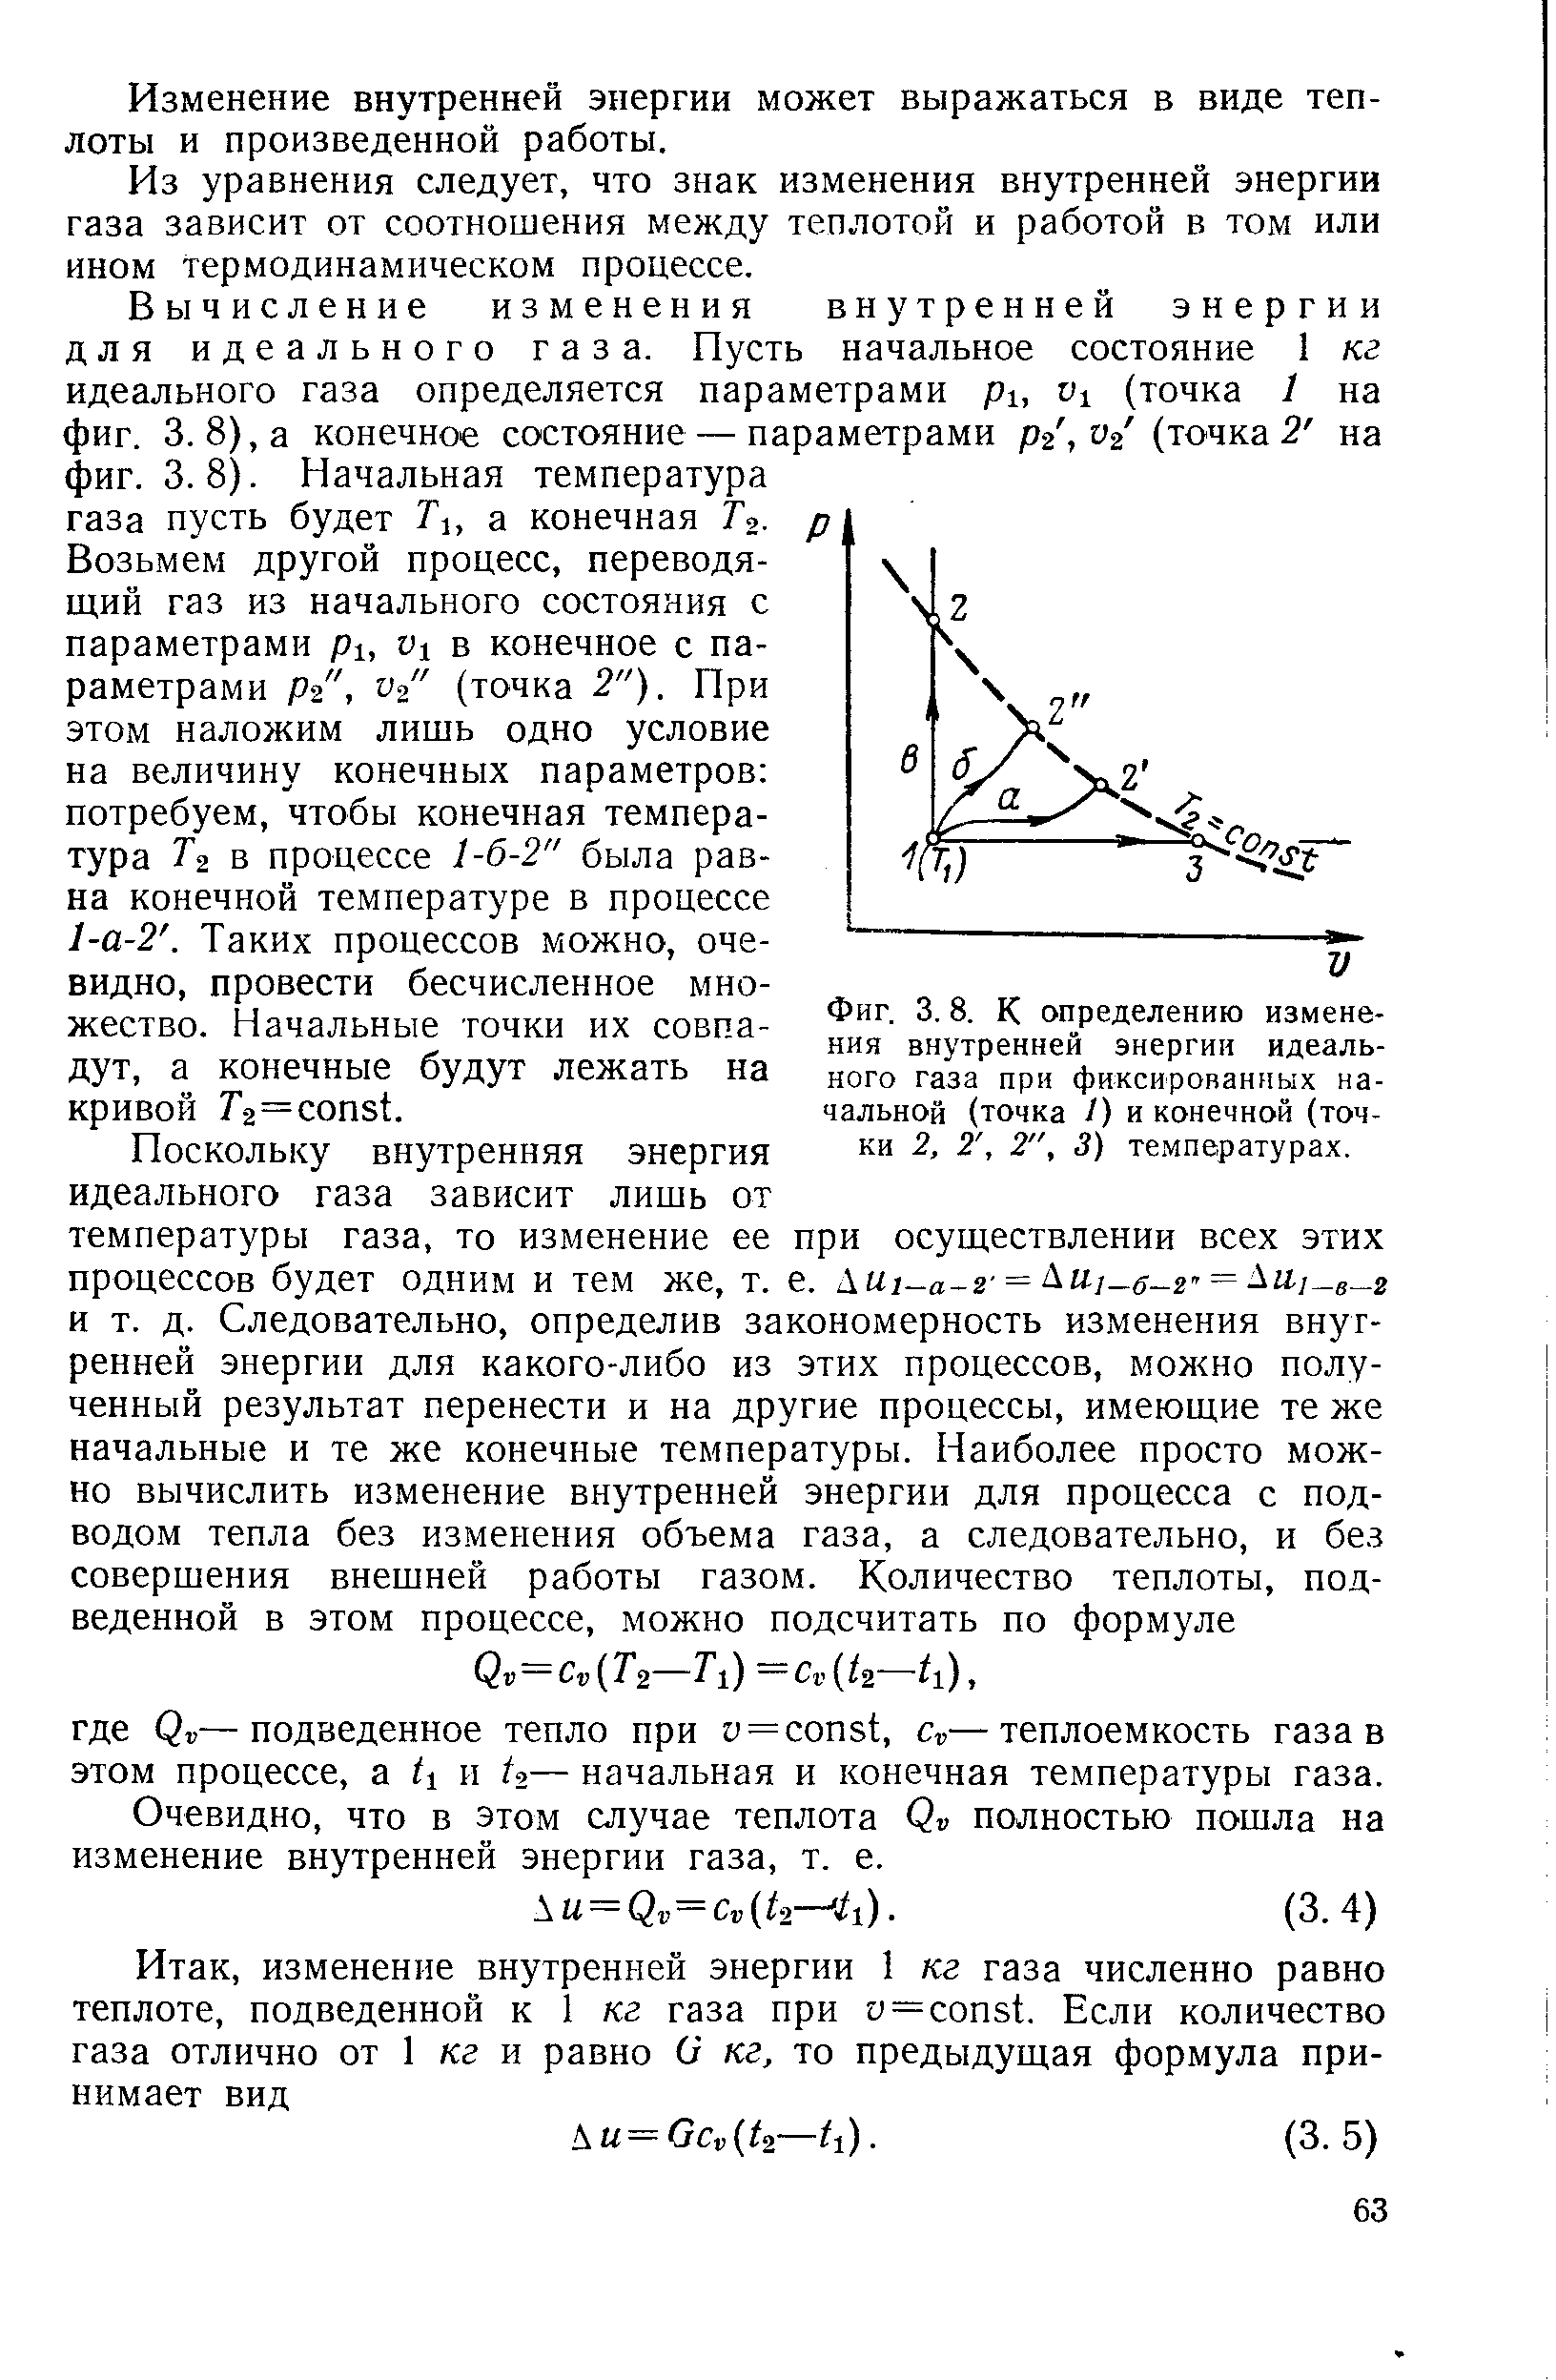 Фиг. 3.8. К определению изменения внутренней энергии идеального газа при фиксированных начальной (точка /) и конечной (точки 2, 2, 2", 3) температурах.
